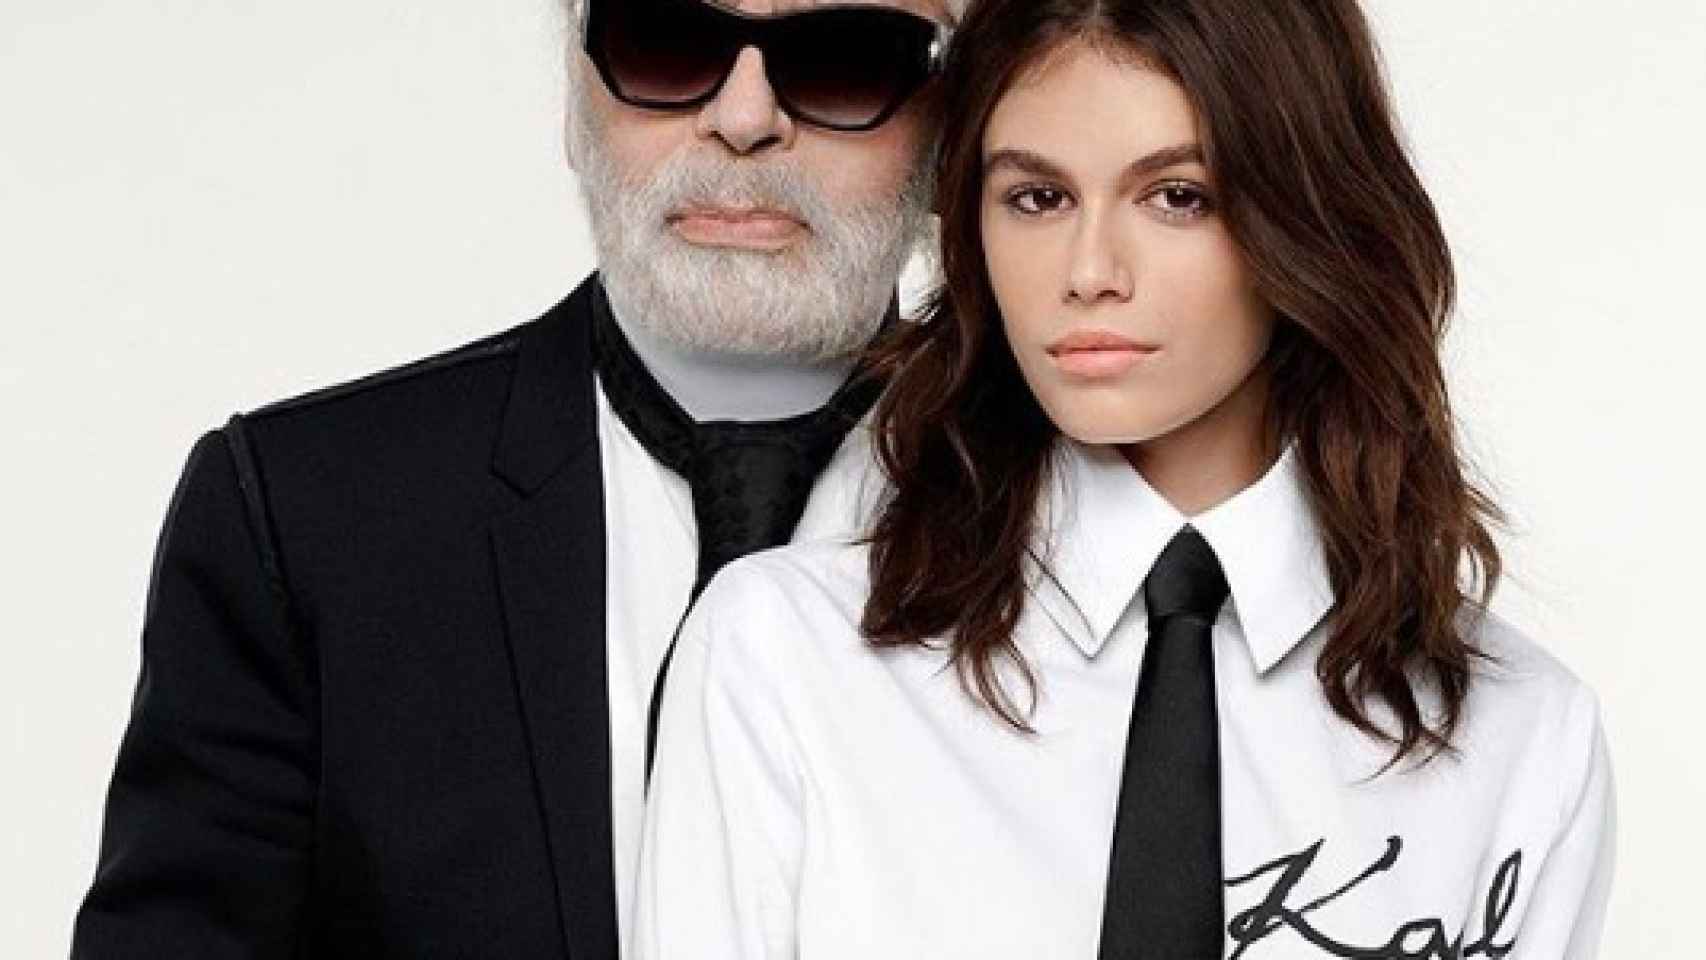 Karl Lagerfeld y Kaia Gerber posando en una foto de sus redes sociales para presentar su nueva colección.